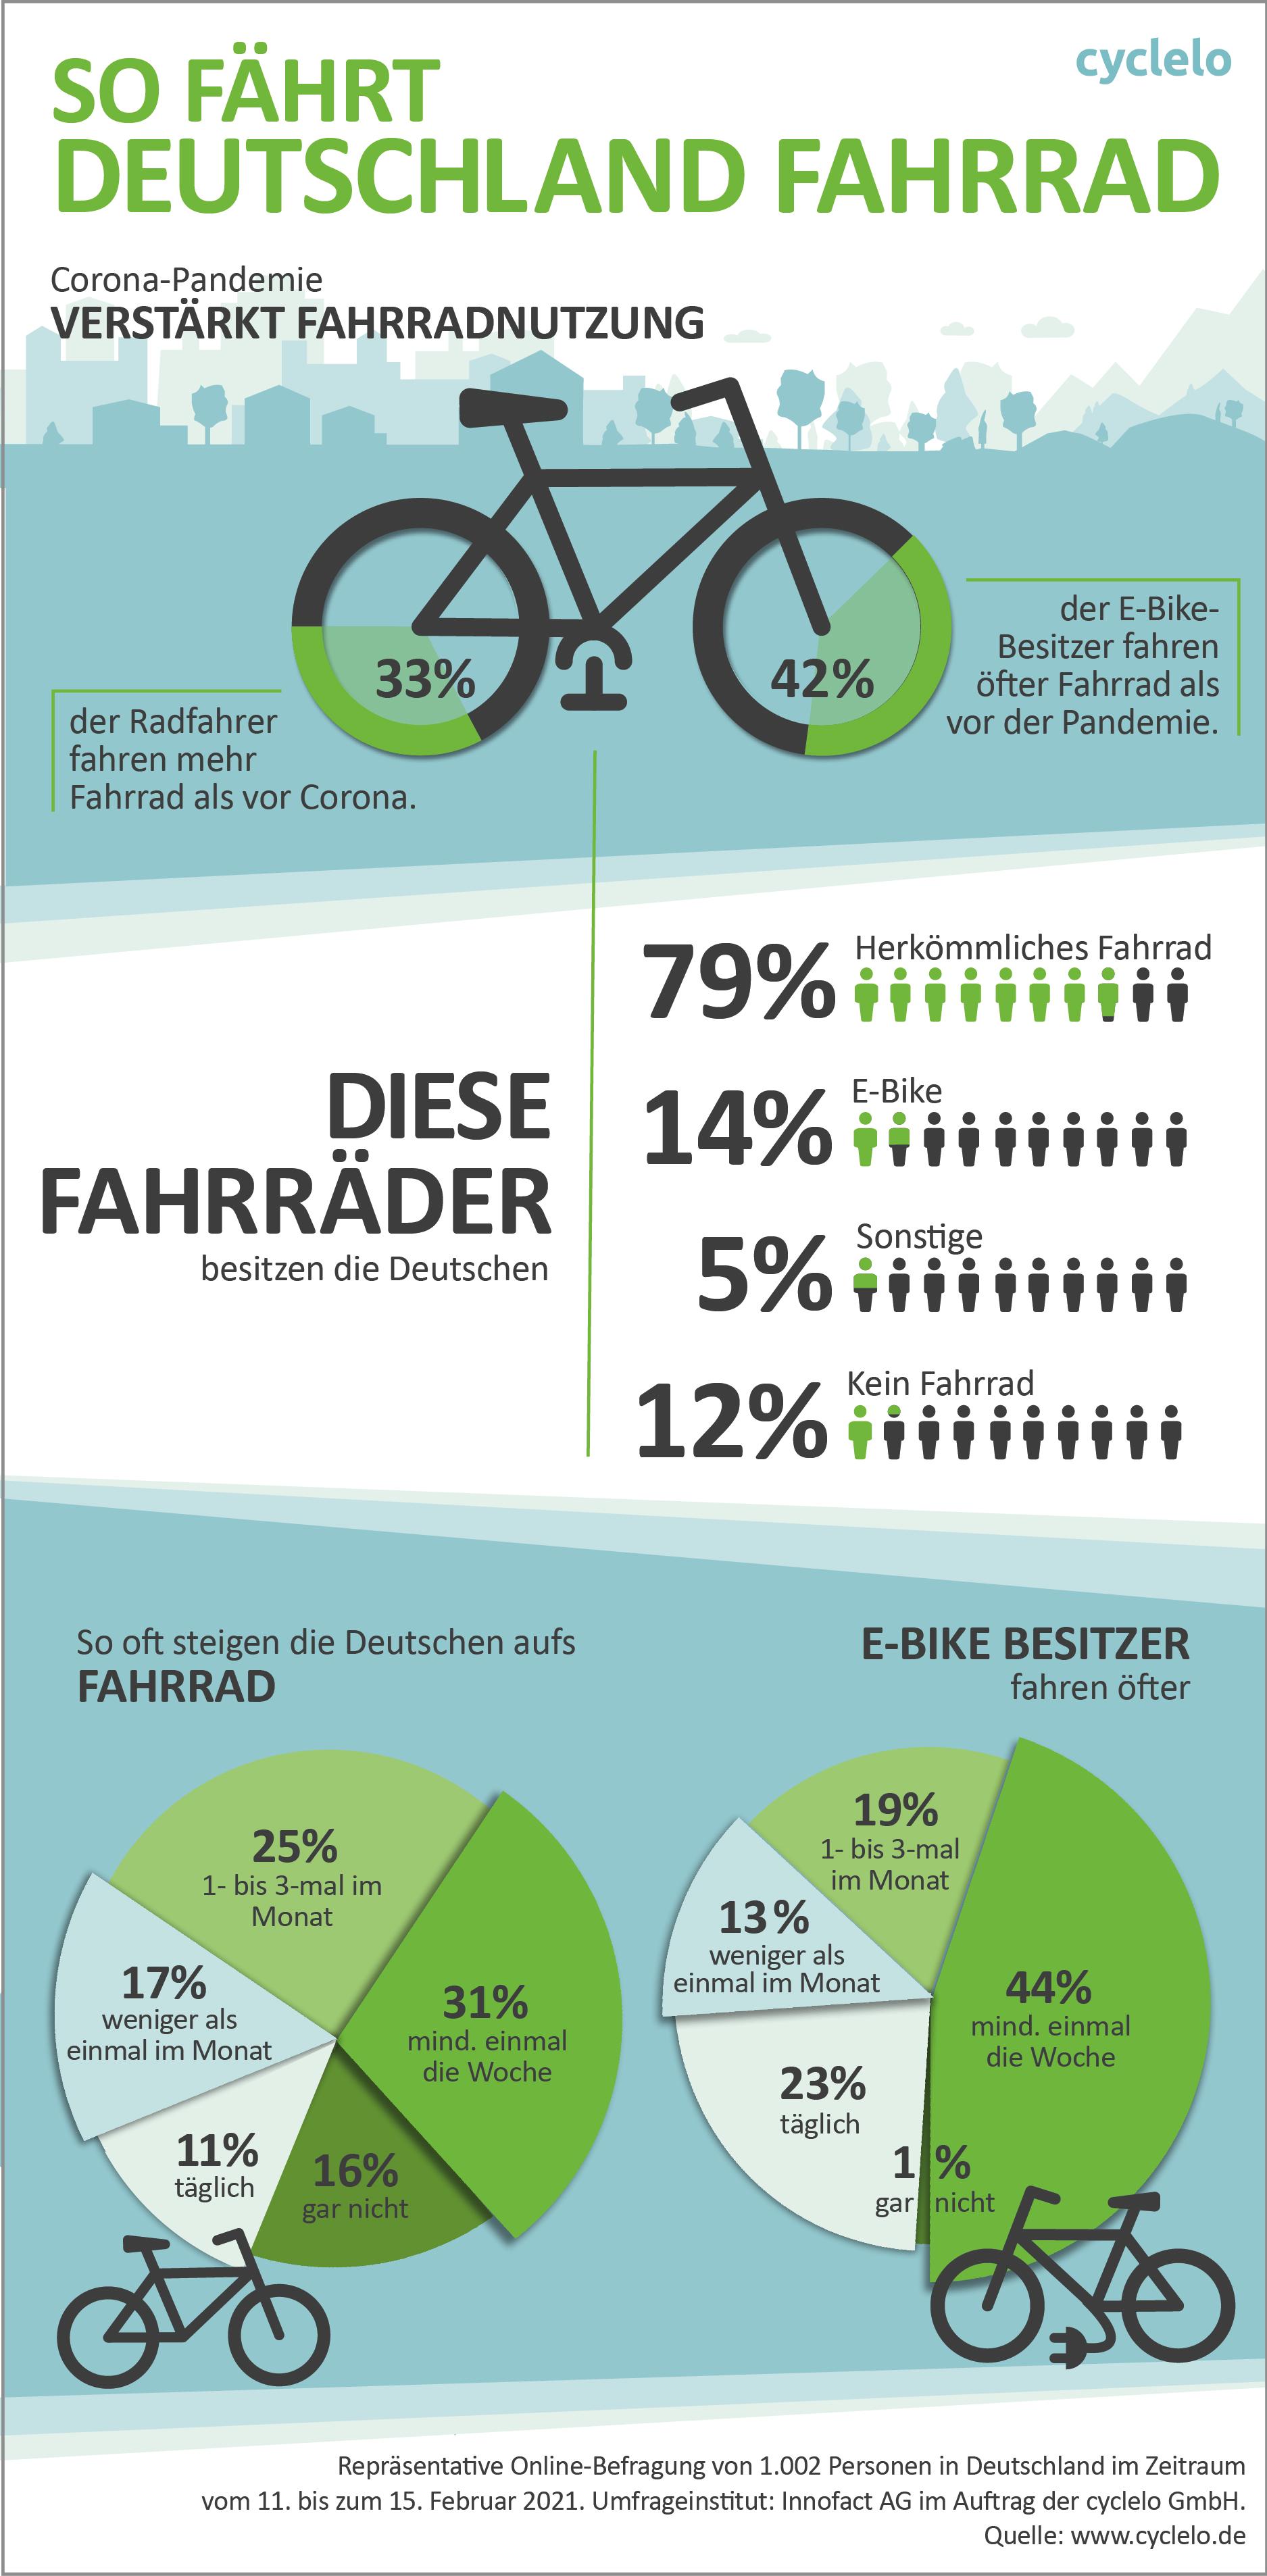 Infografik: Deutsche geben mehr für Fahrradzubehör aus